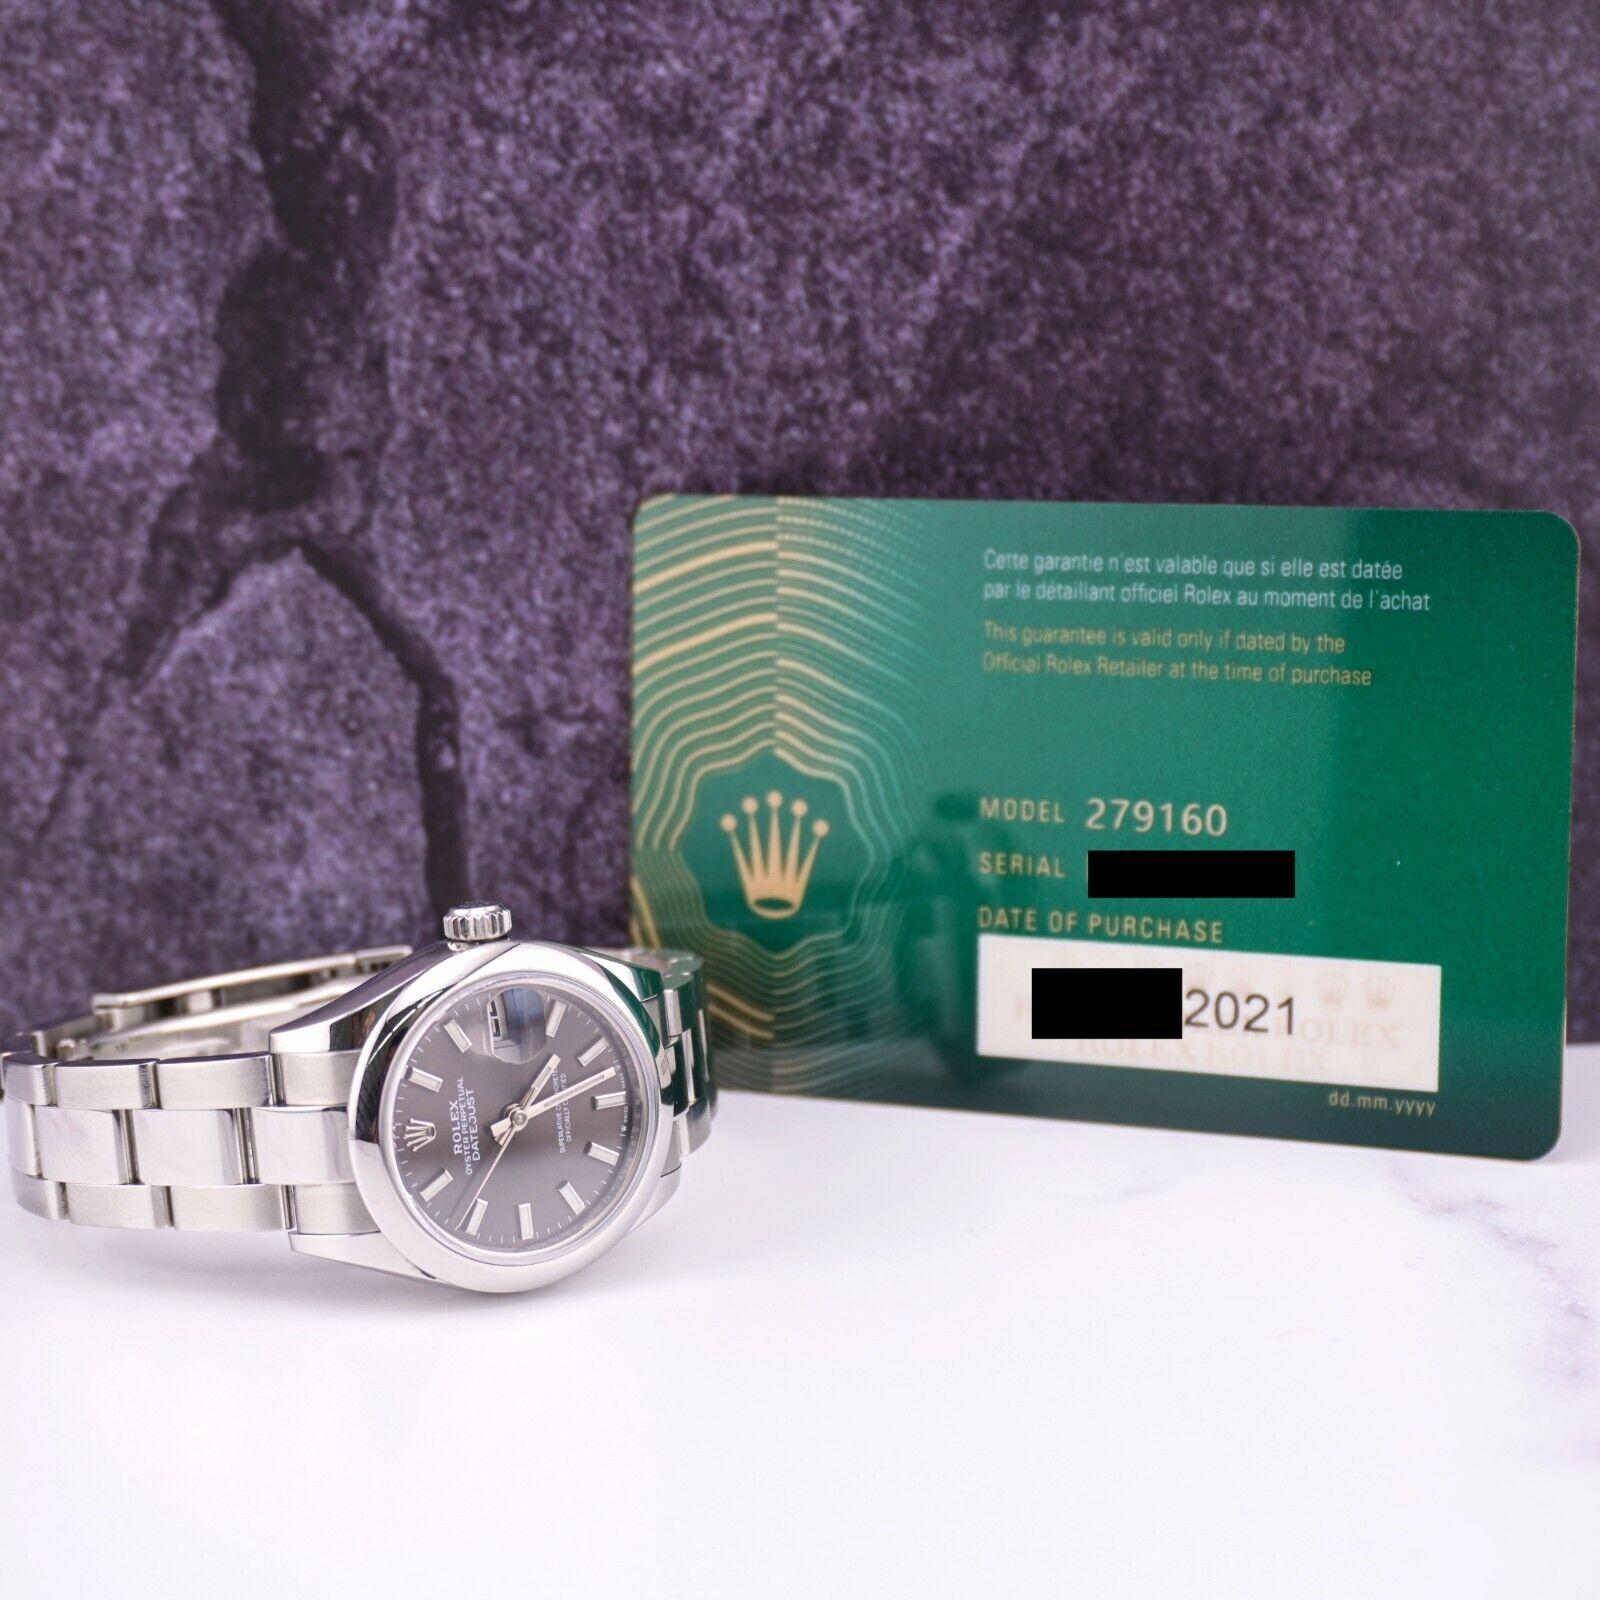 Montre Rolex Datejust 28mm

D'occasion avec boîte et papiers d'origine
100% authentique, certificat de valeur et carte d'authenticité Swiss Ice
Condition - (Excellent Condition) - Voir Pics
Référence de la montre - 279160
Modèle - Datejust
Couleur